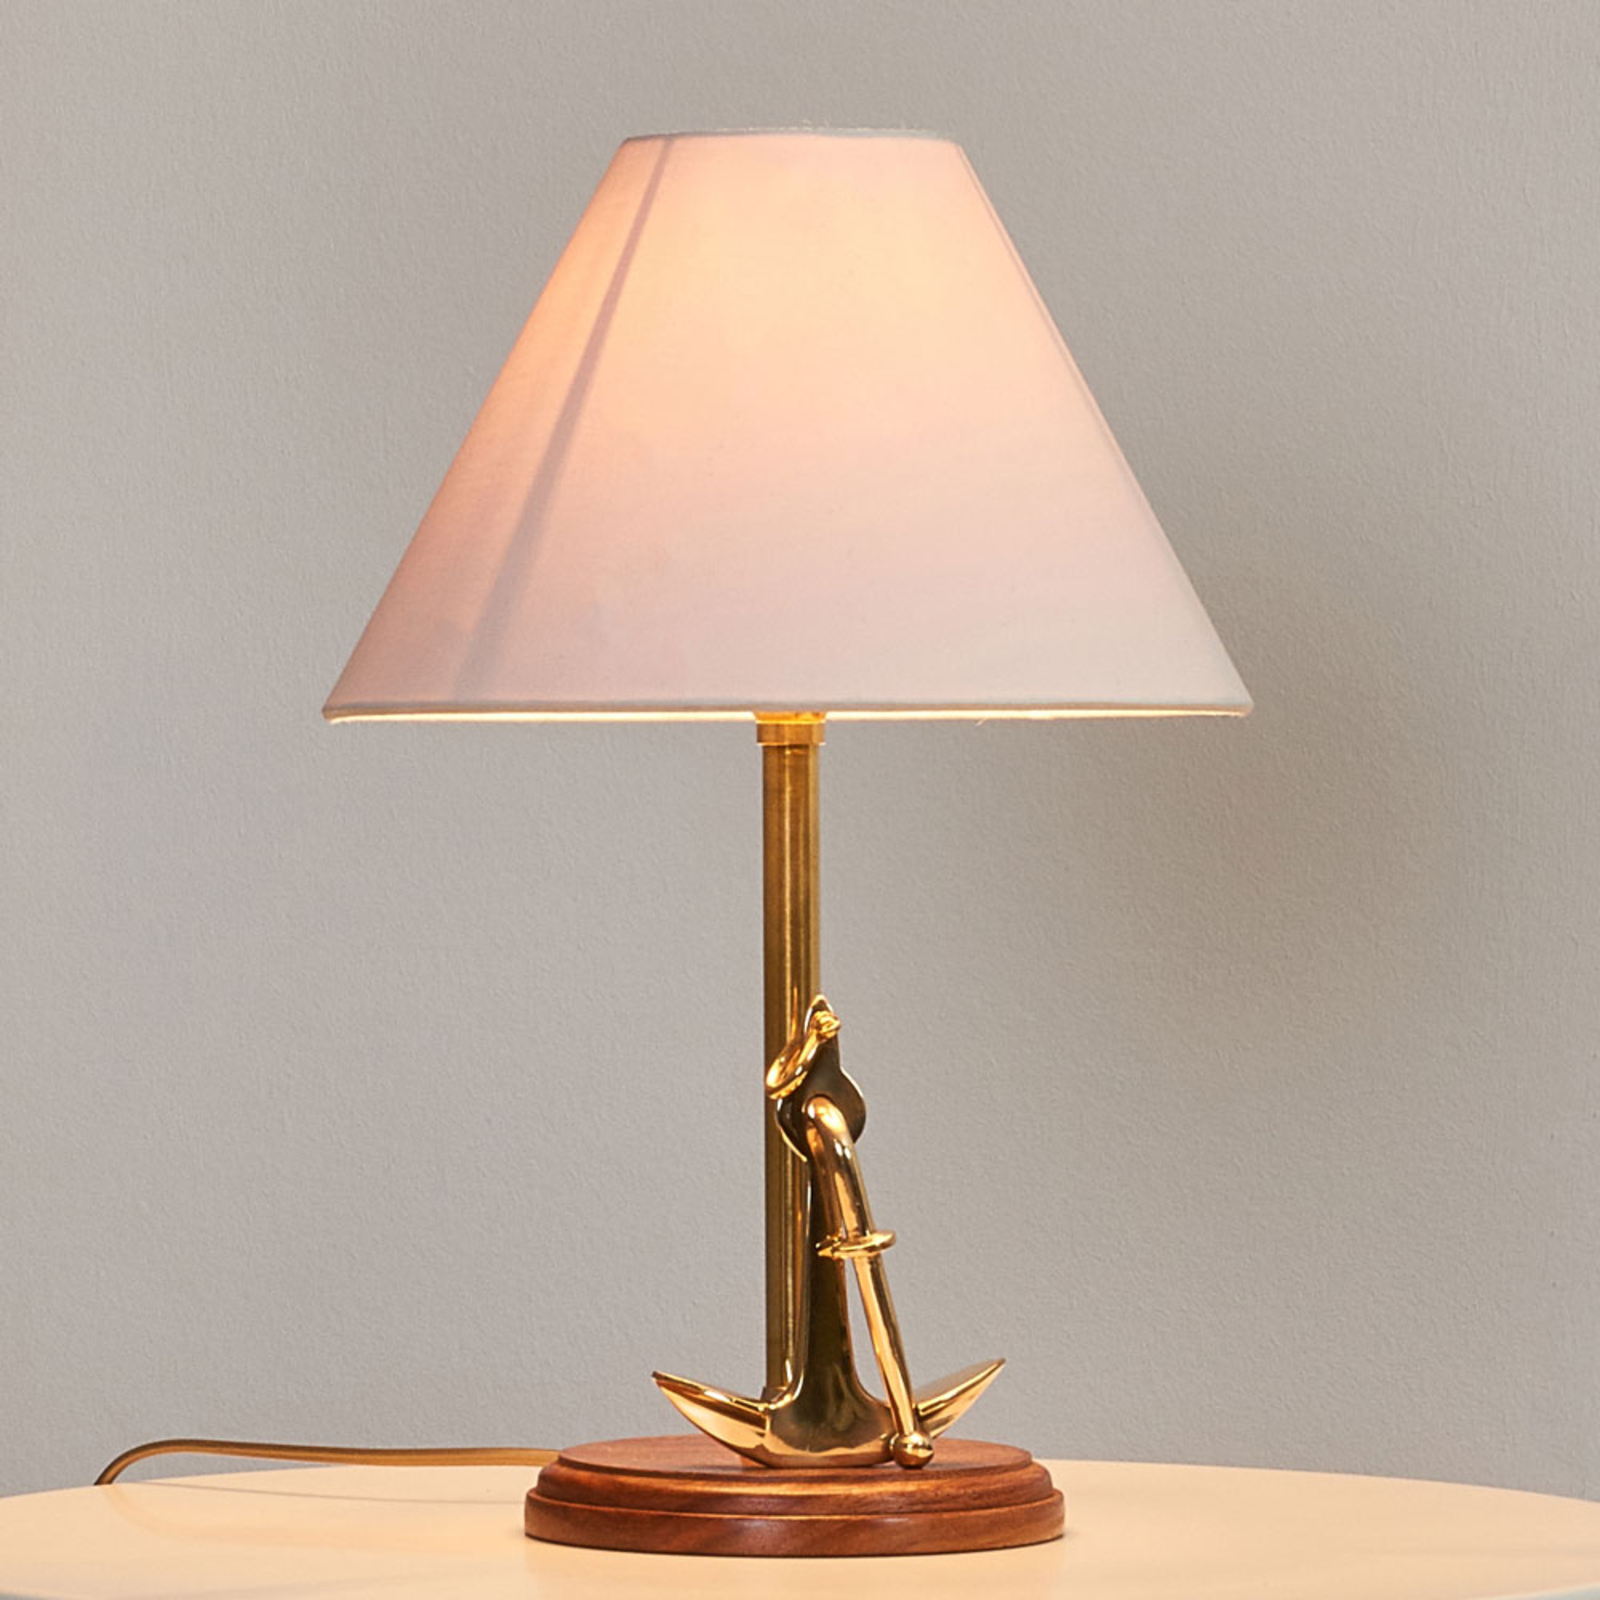 Anchor tafellamp met maritiem detail